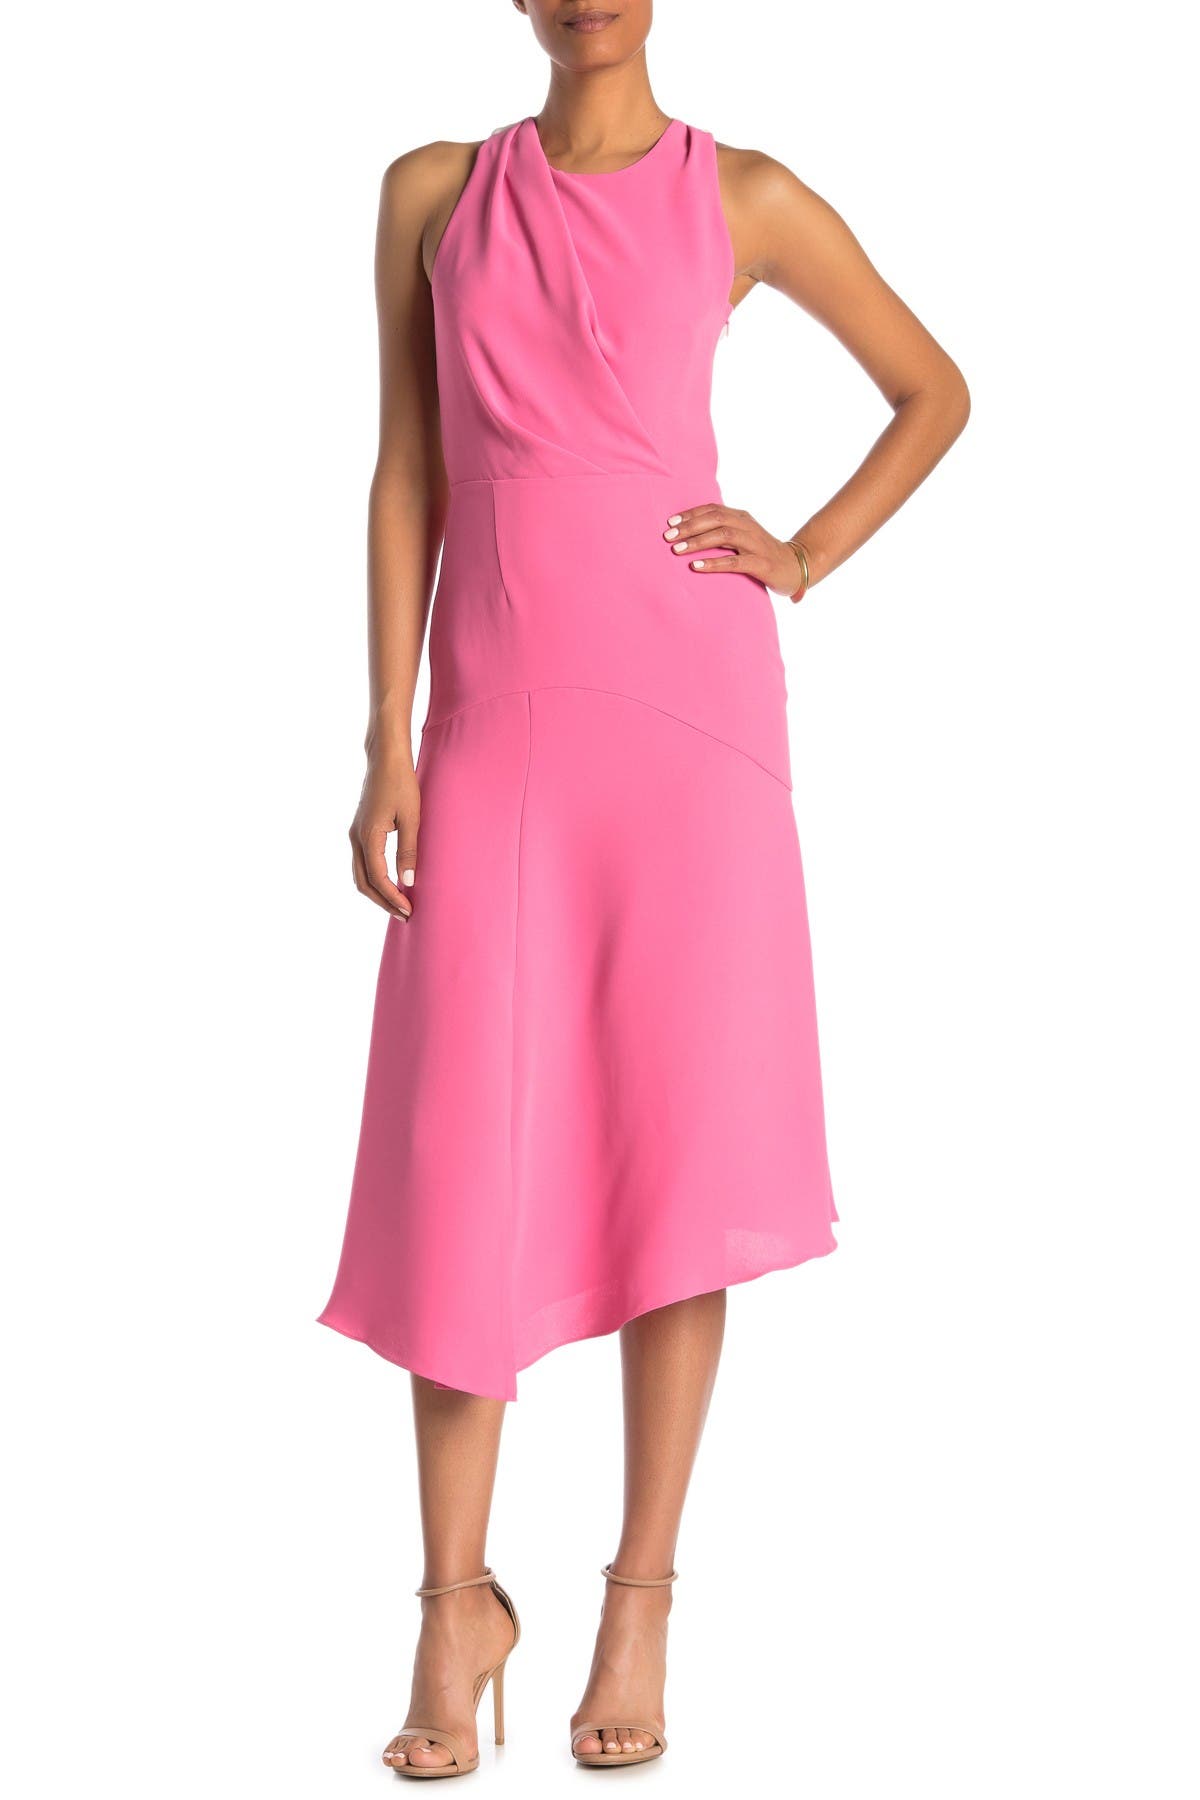 nordstrom rack pink dress